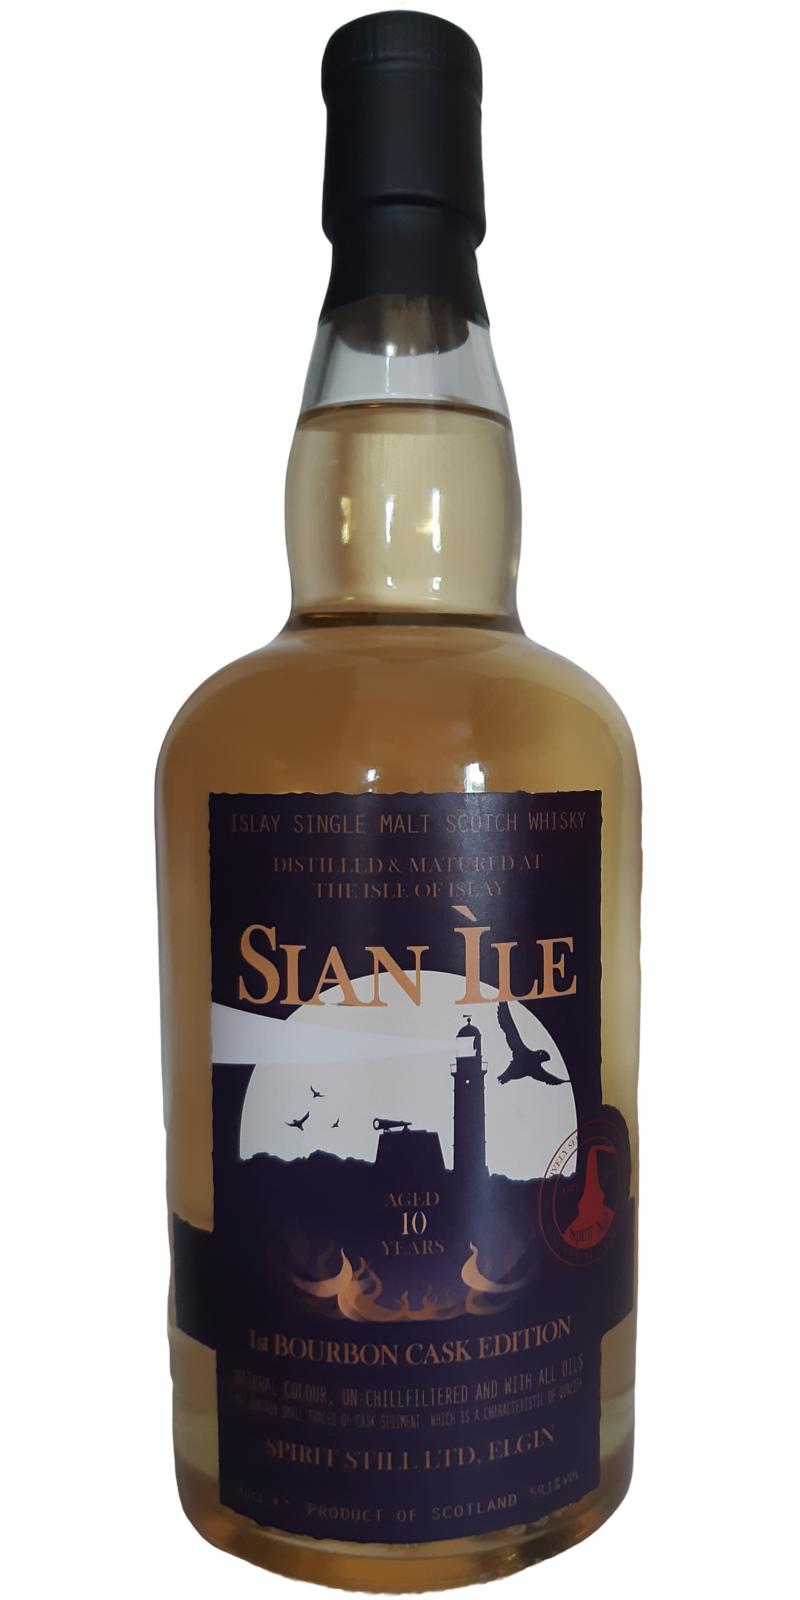 Sian Ile 10yo SSL 1st Bourbon Cask Edition 59.1% 700ml